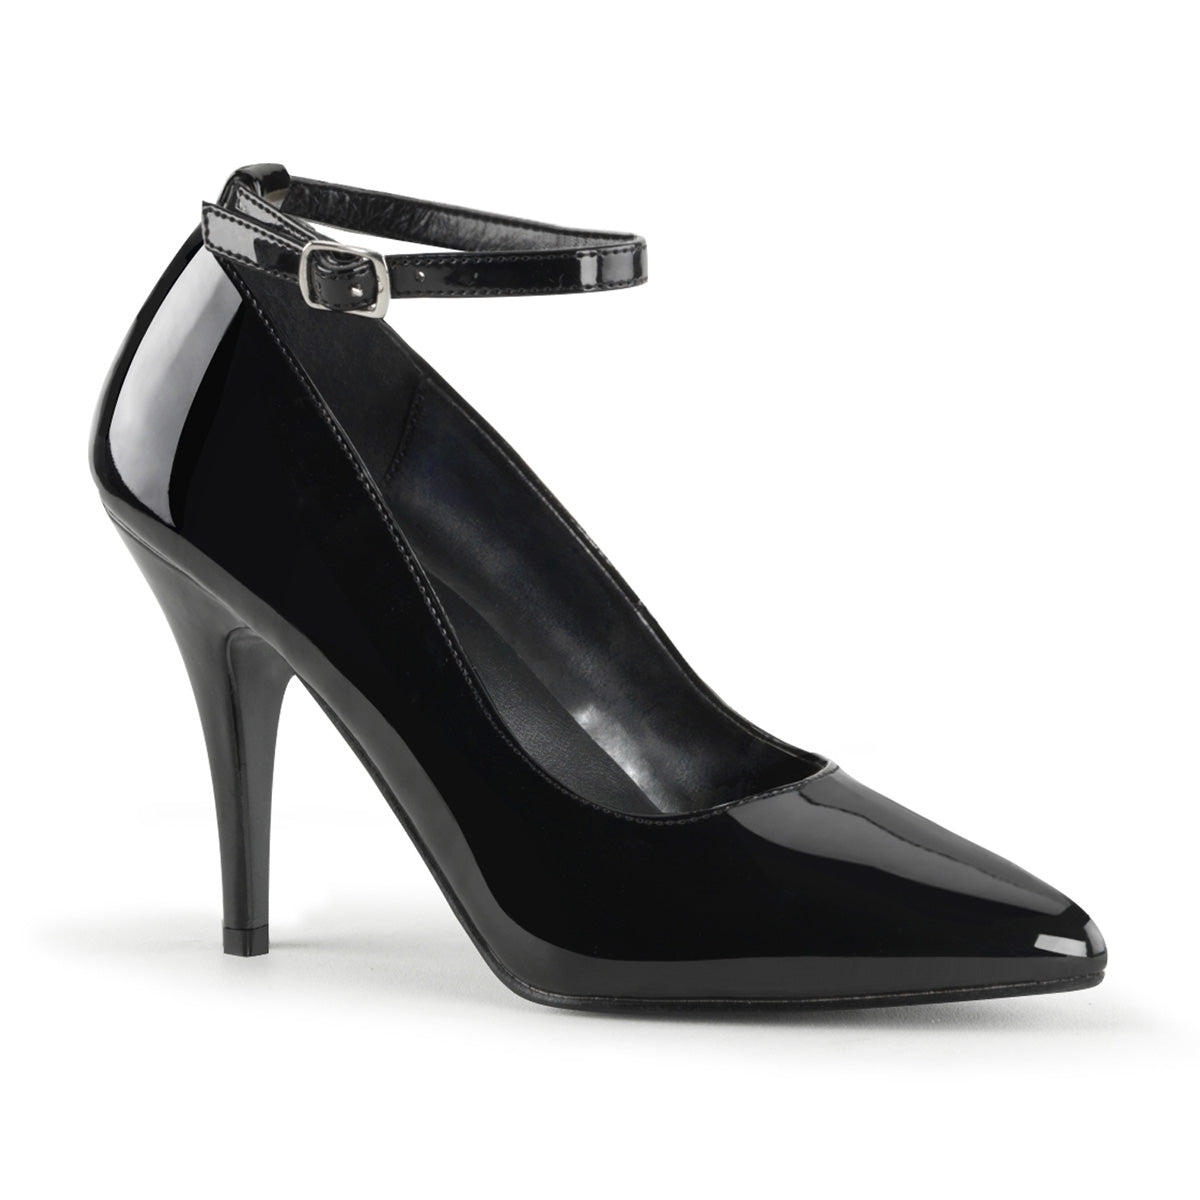 VANITY-431 Pleaser Shoe 4" Heel Black Patent Fetish Footwear